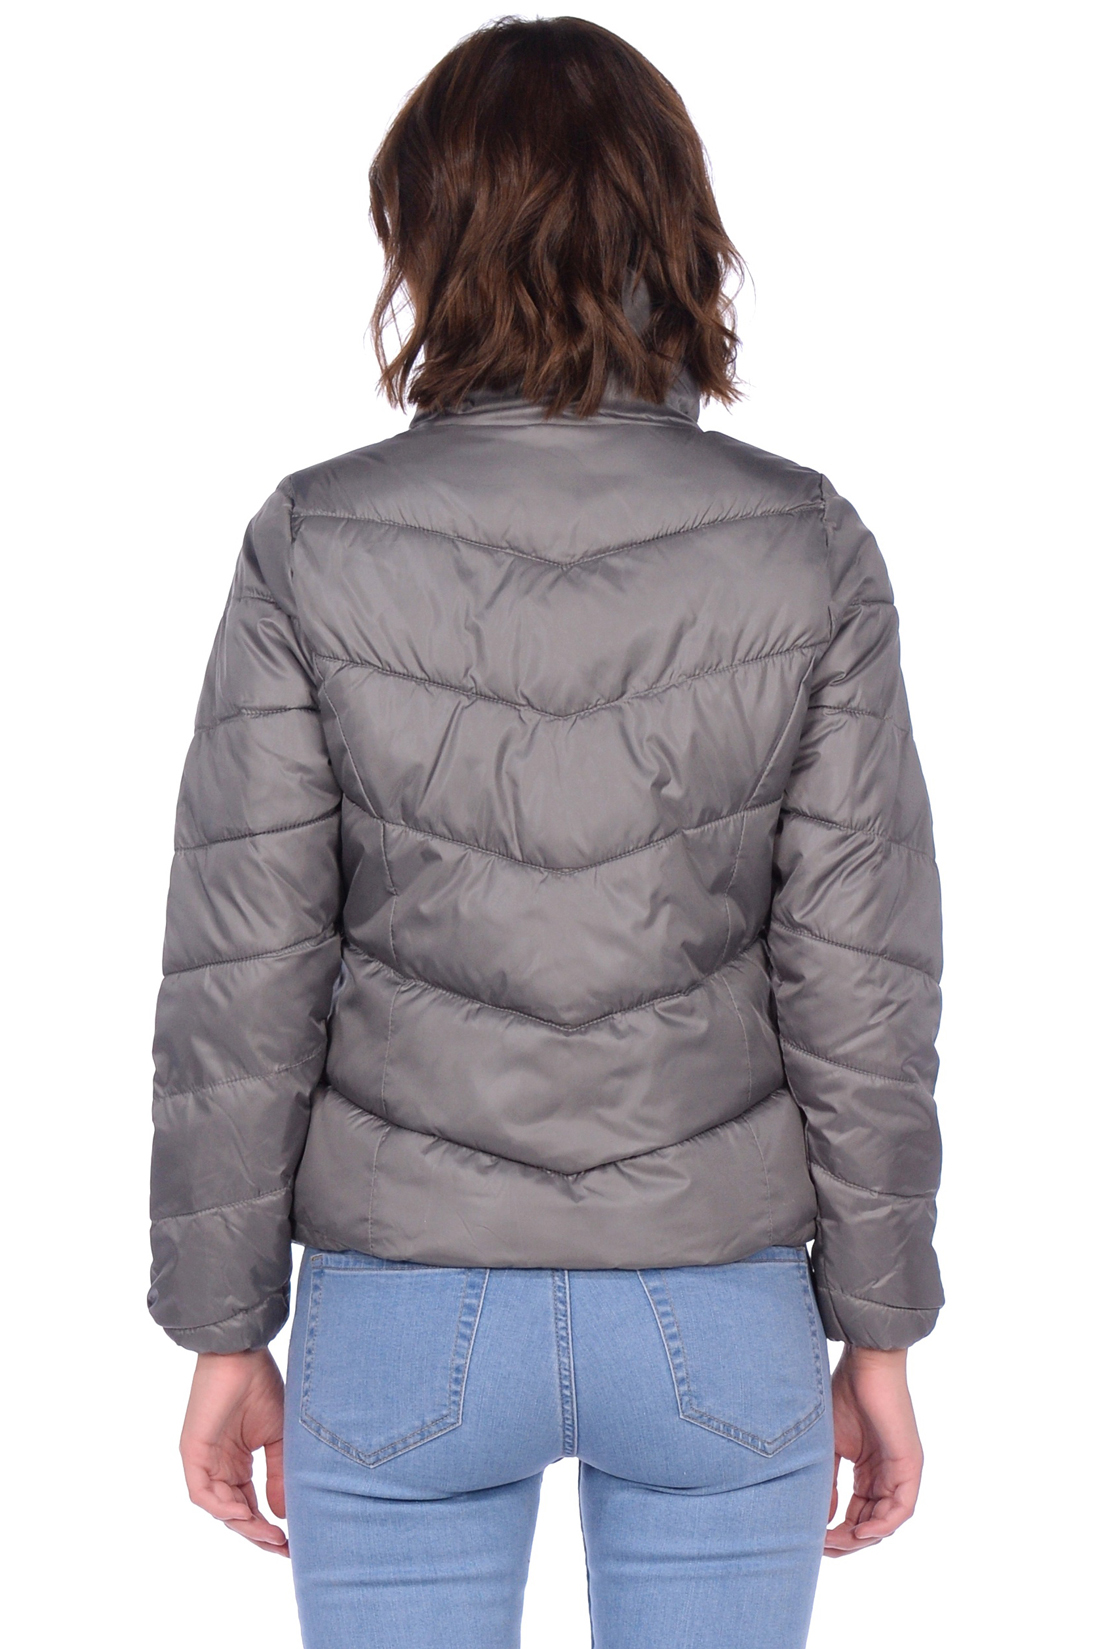 Укороченная дутая куртка (арт. baon B039561), размер XL, цвет серый Укороченная дутая куртка (арт. baon B039561) - фото 4